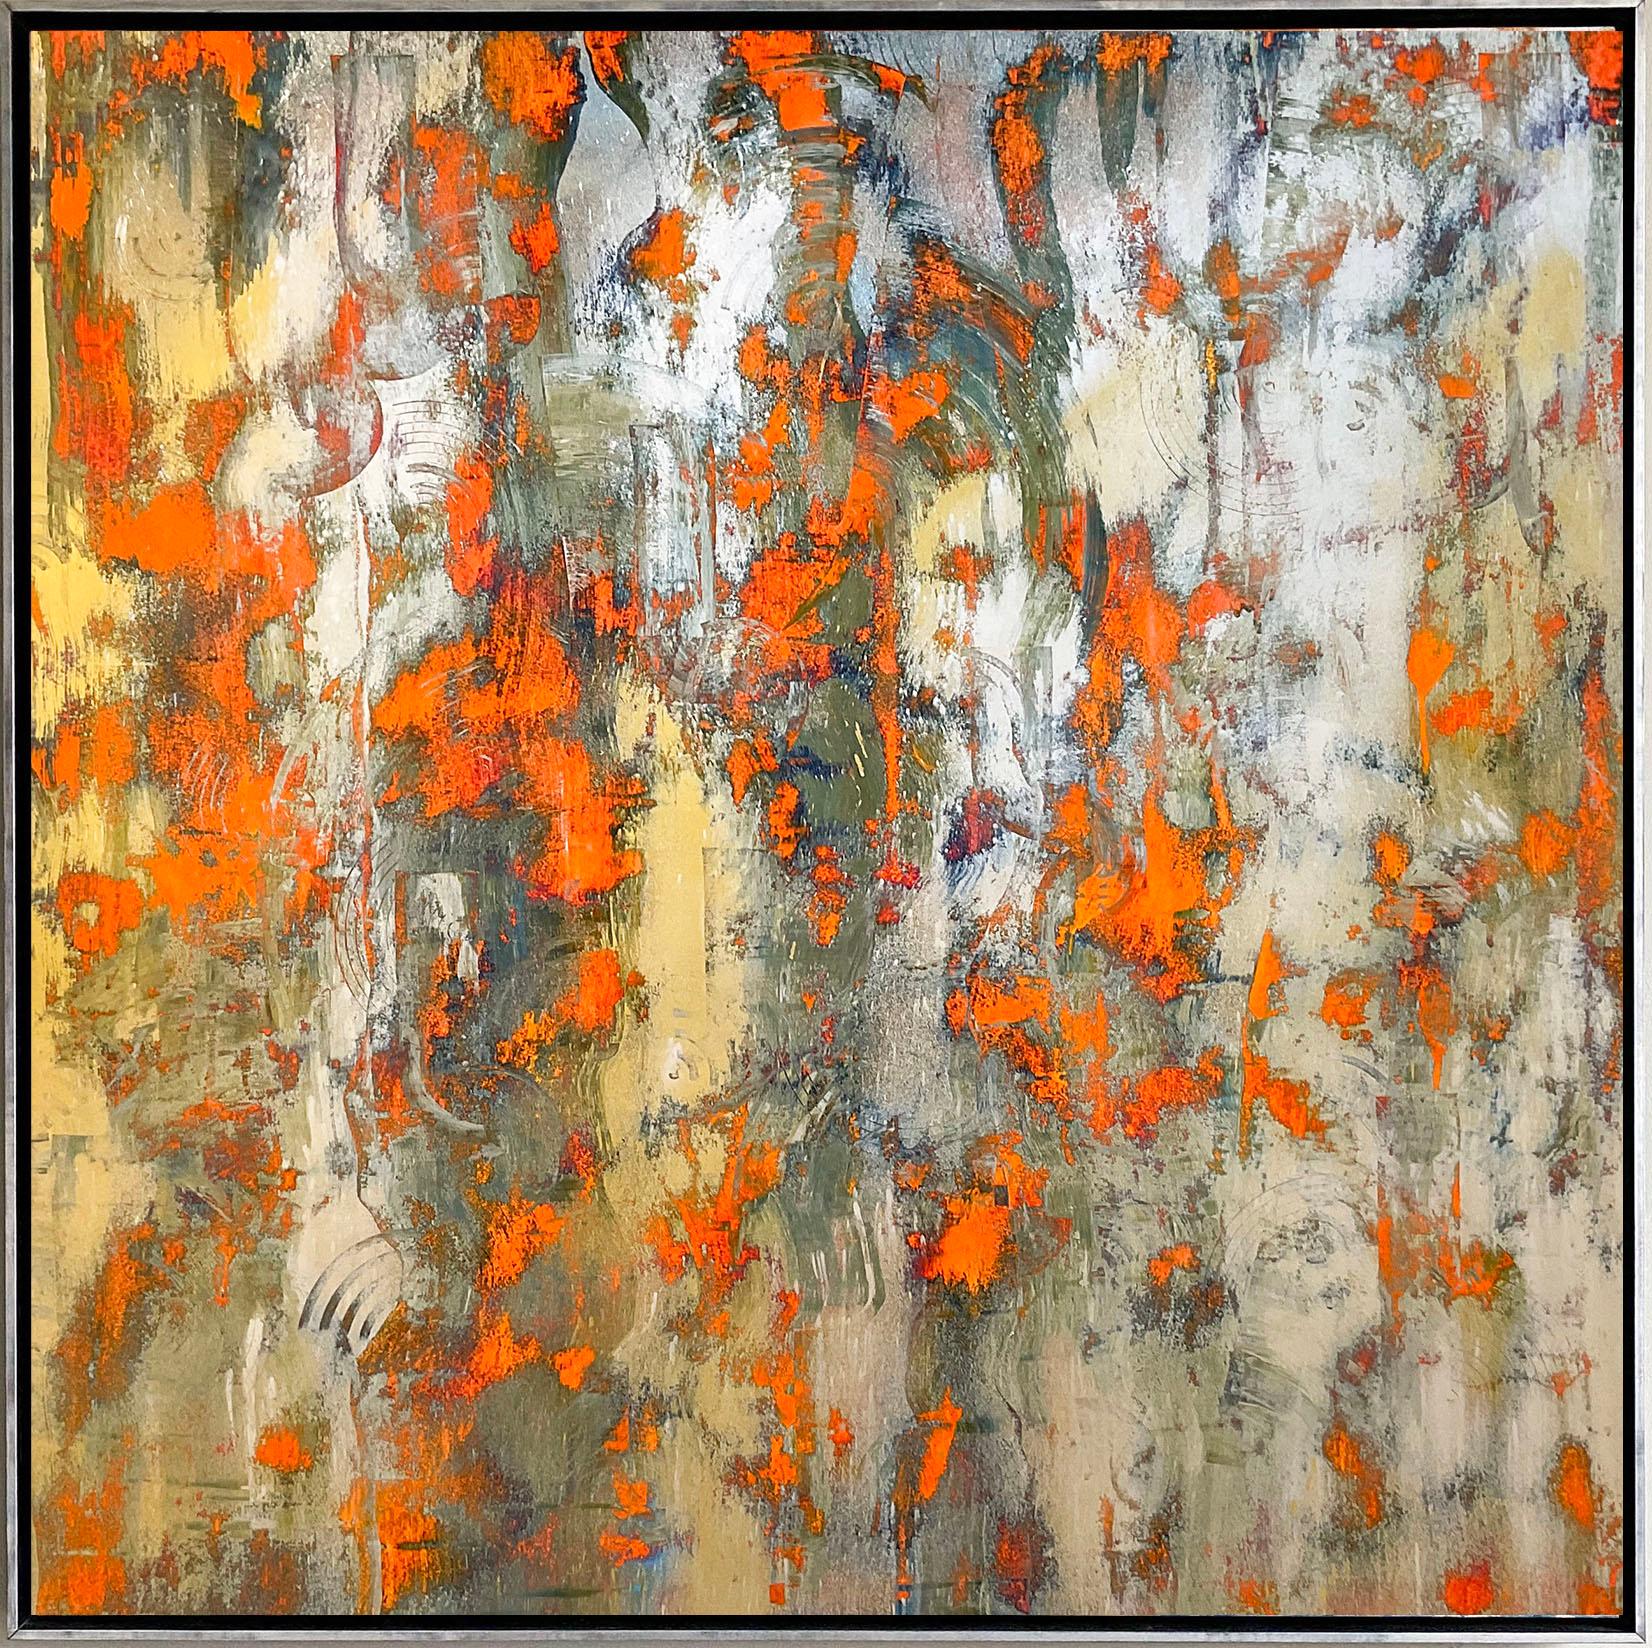 Sans titre Orange Silver and Gold : Peinture expressionniste abstraite - Painting de Bruce Murphy